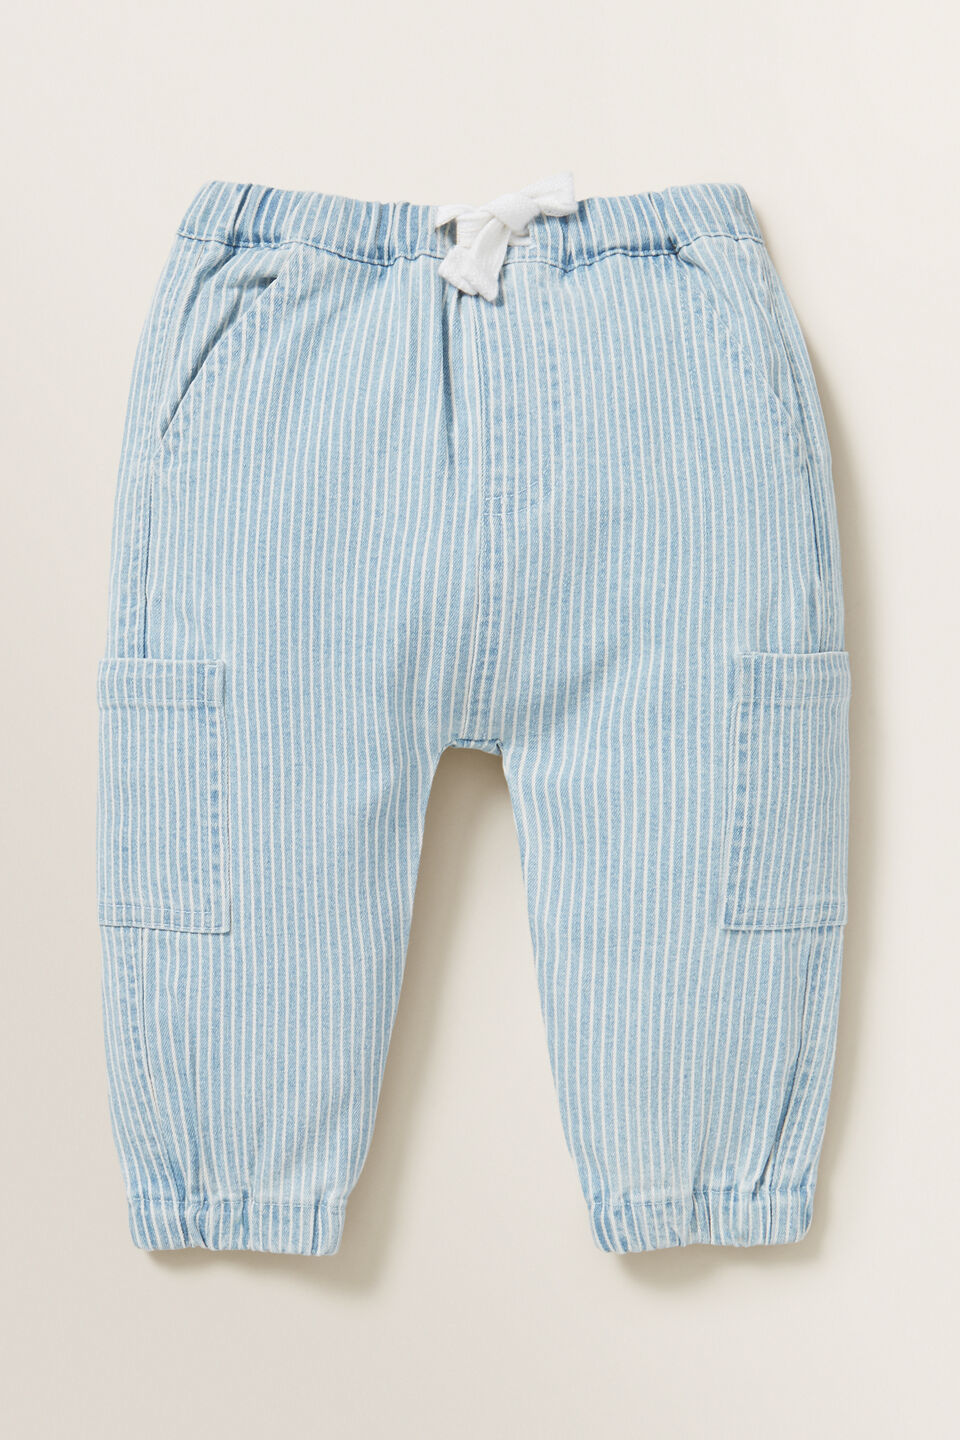 Stripe Pocket Pant  